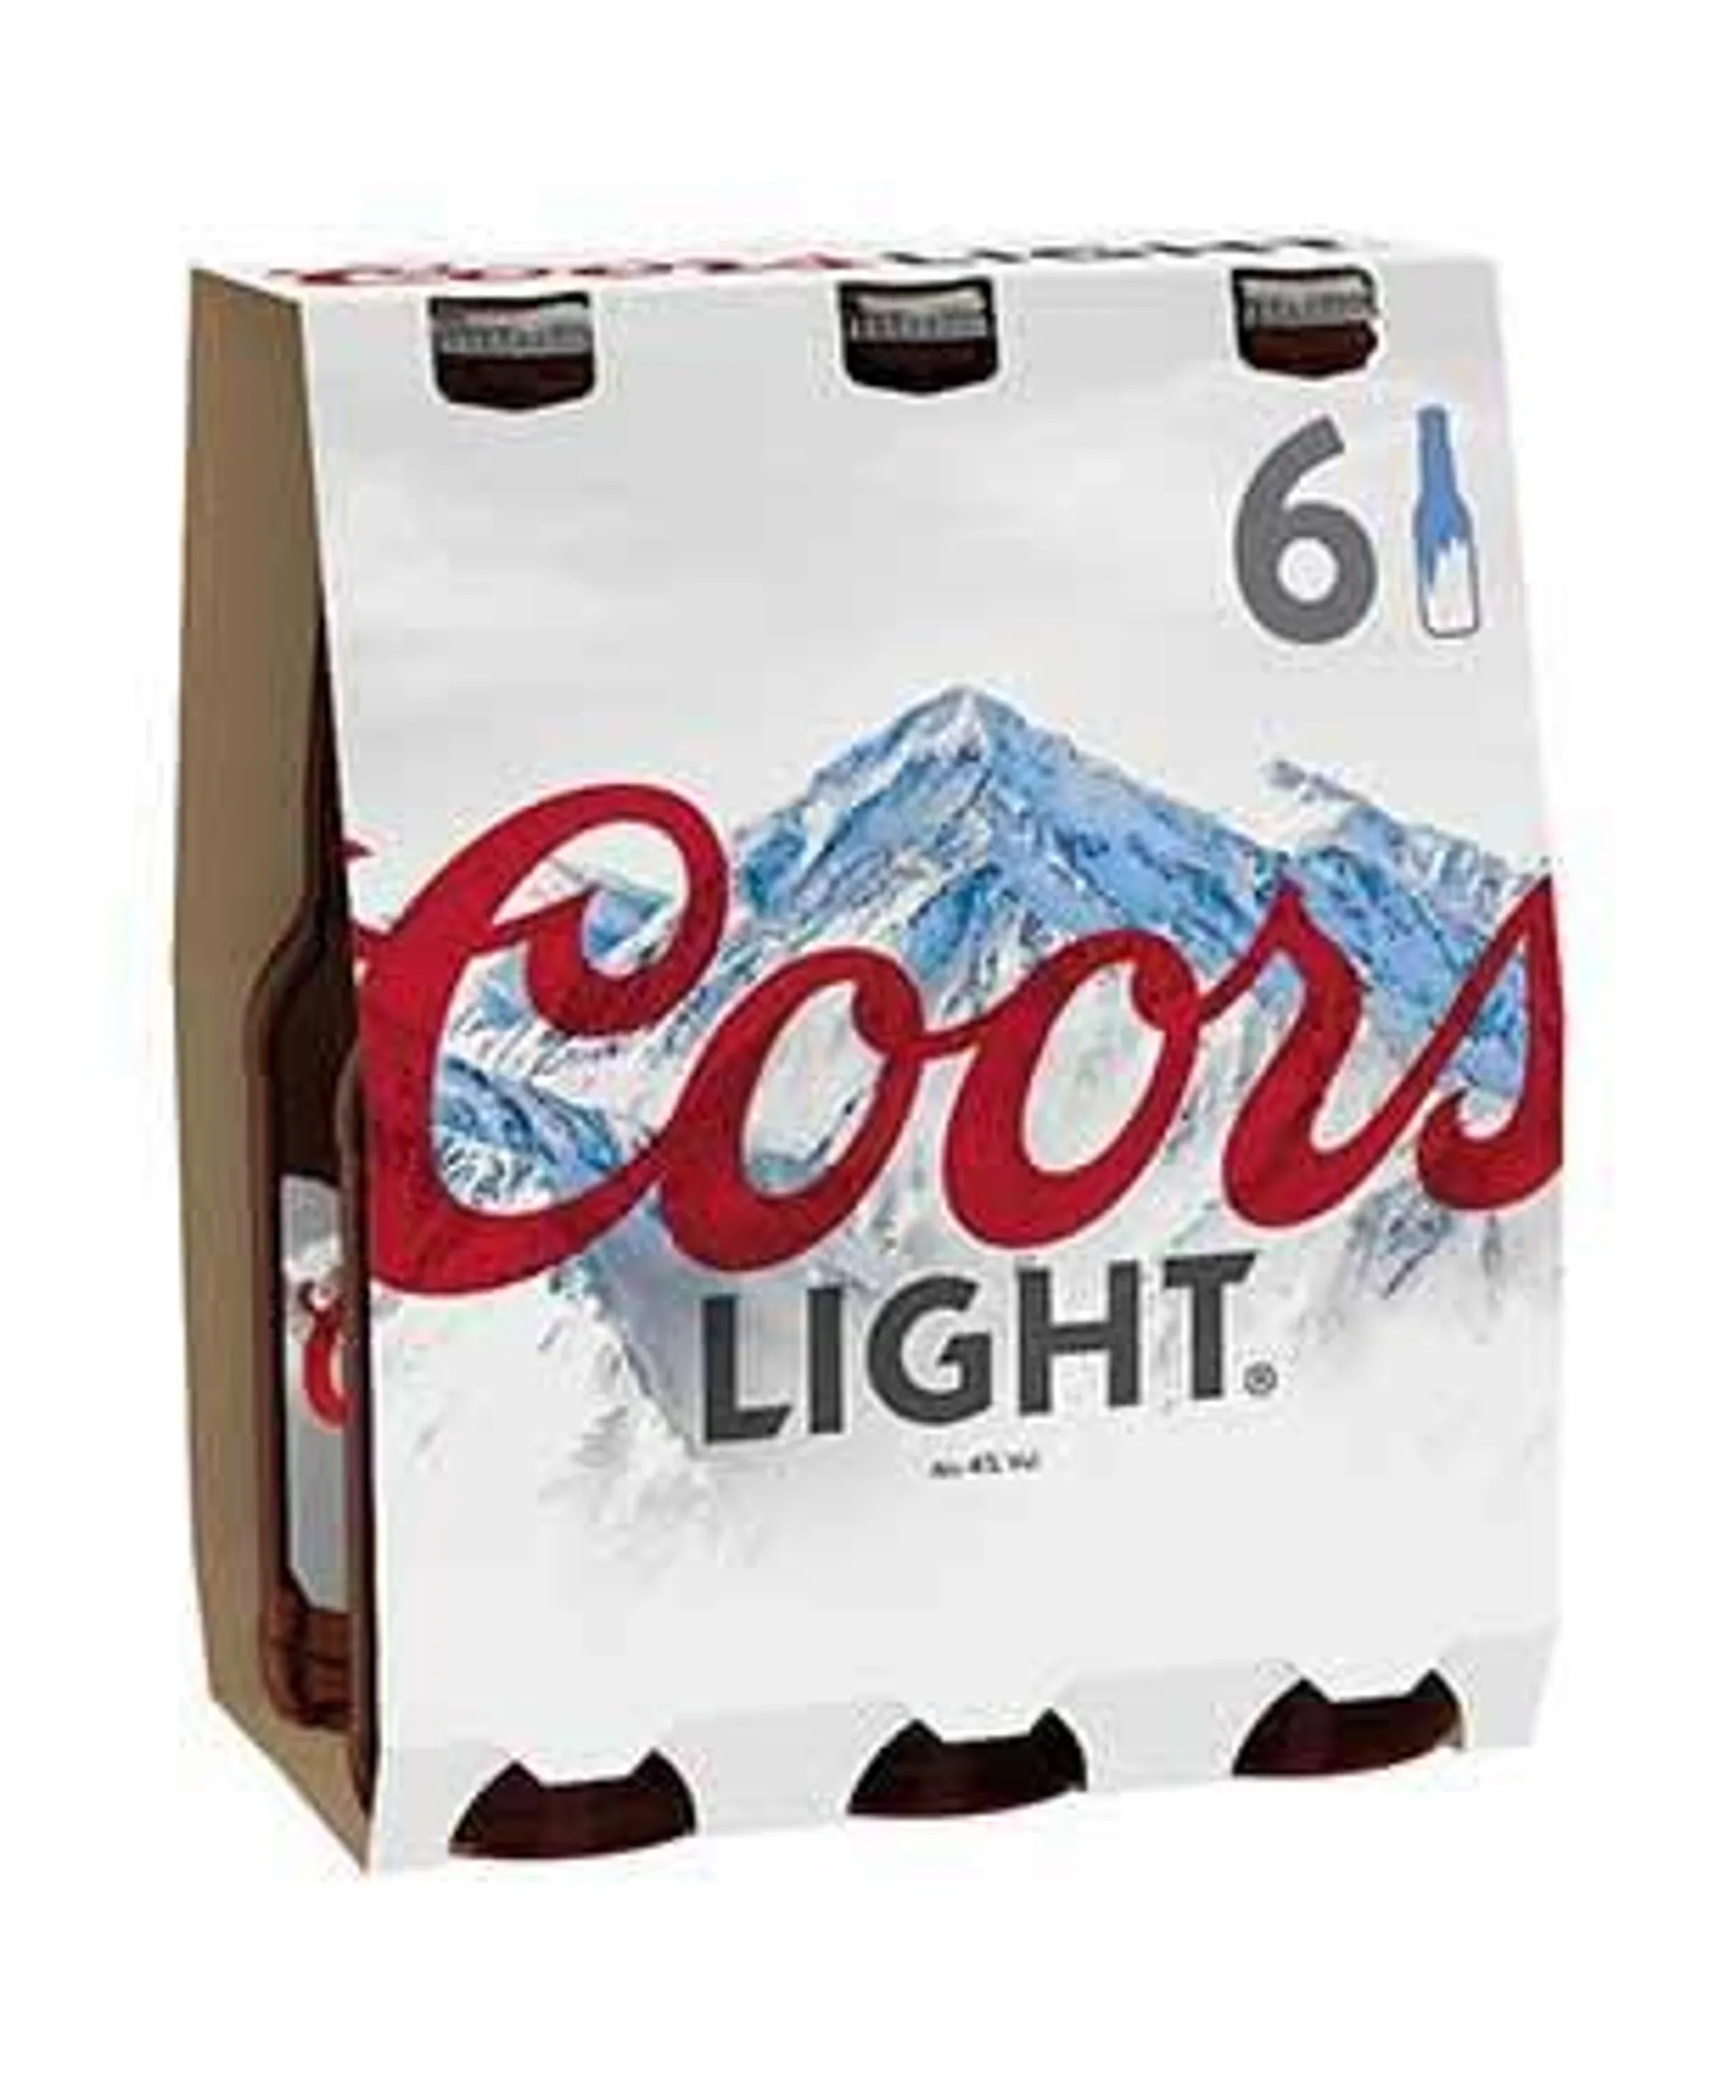 Coors Light 6 Pack Bottles